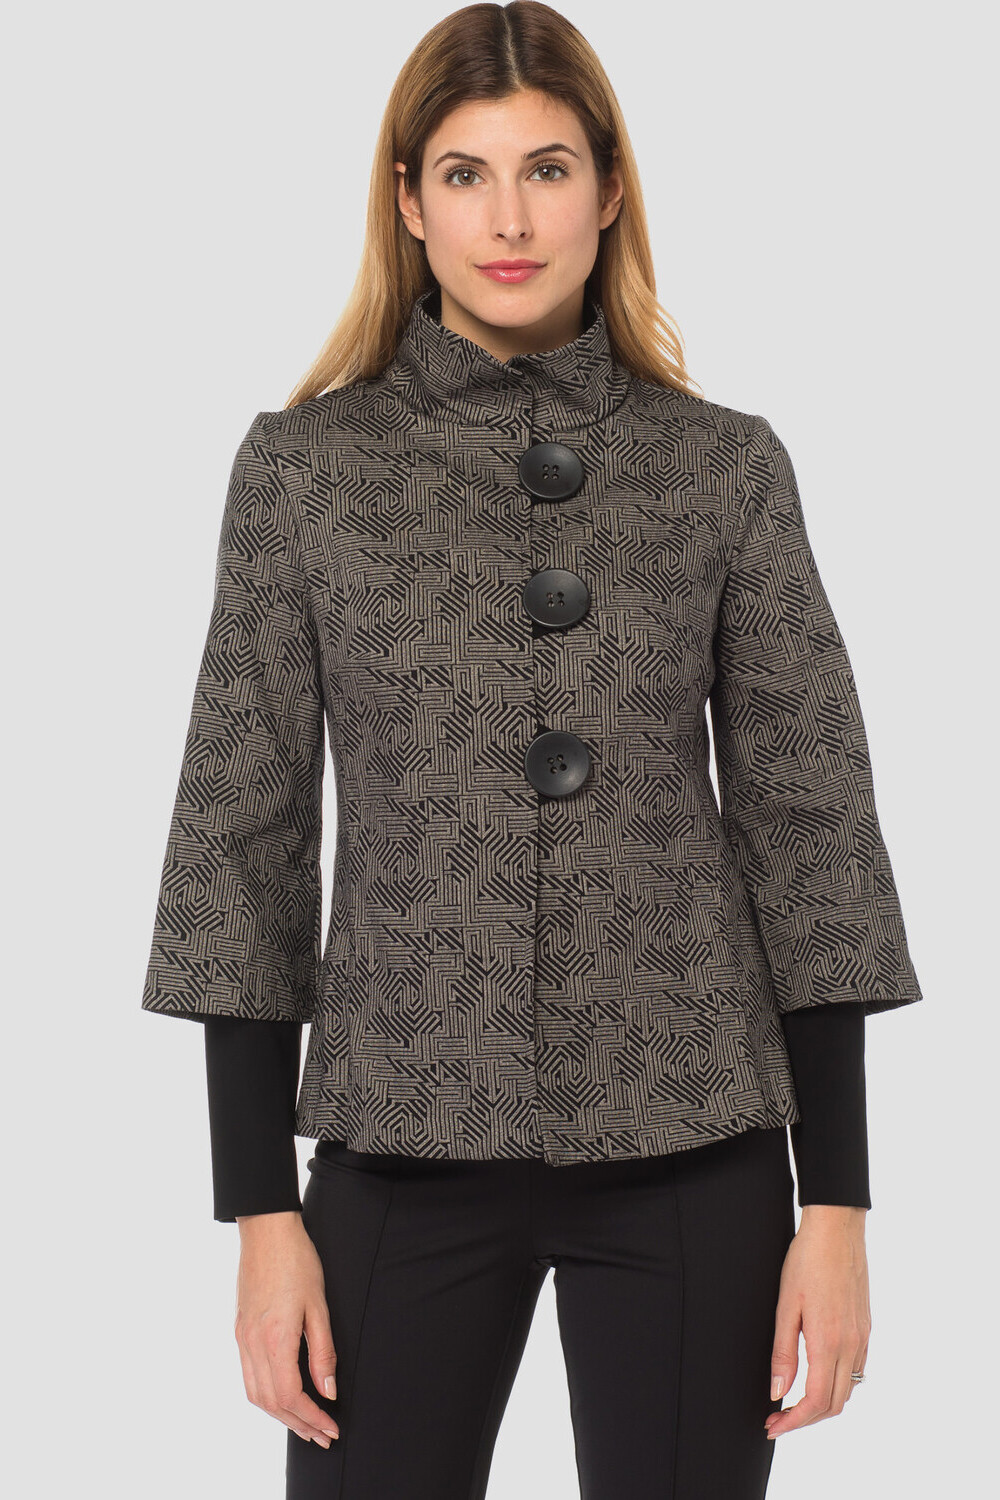 Joseph Ribkoff jacket style 183528. Black/taupe